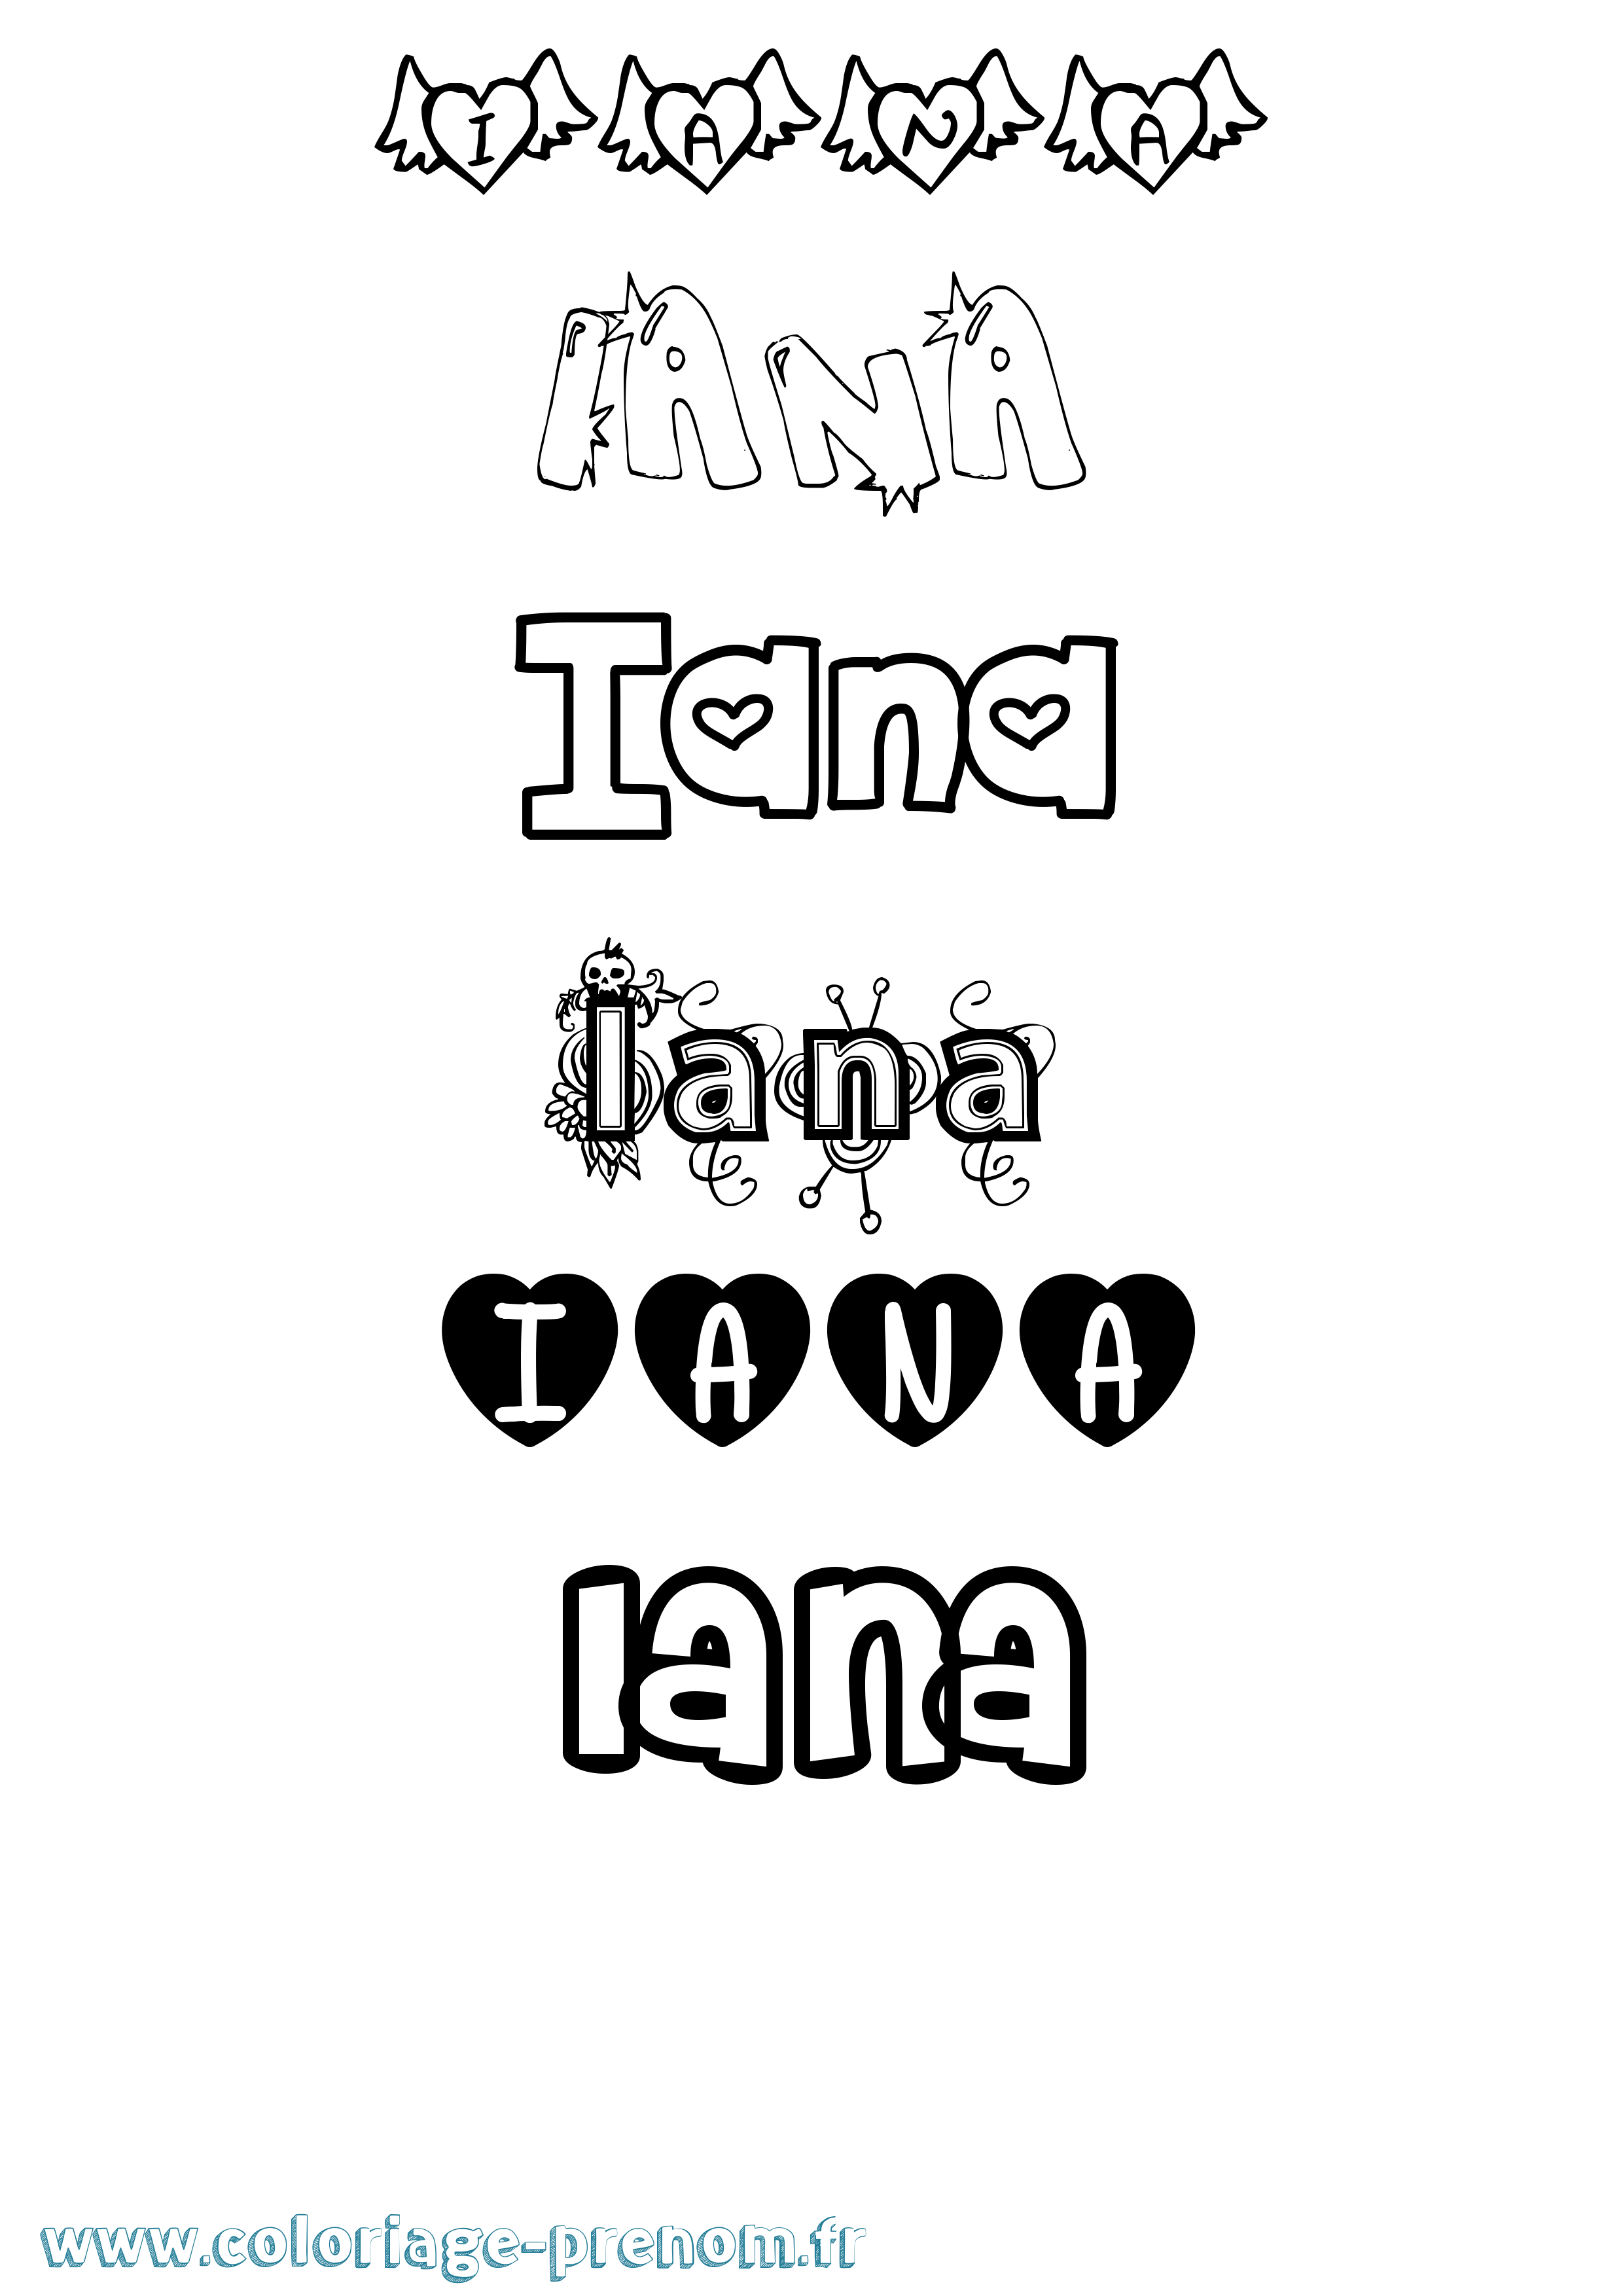 Coloriage prénom Iana Girly